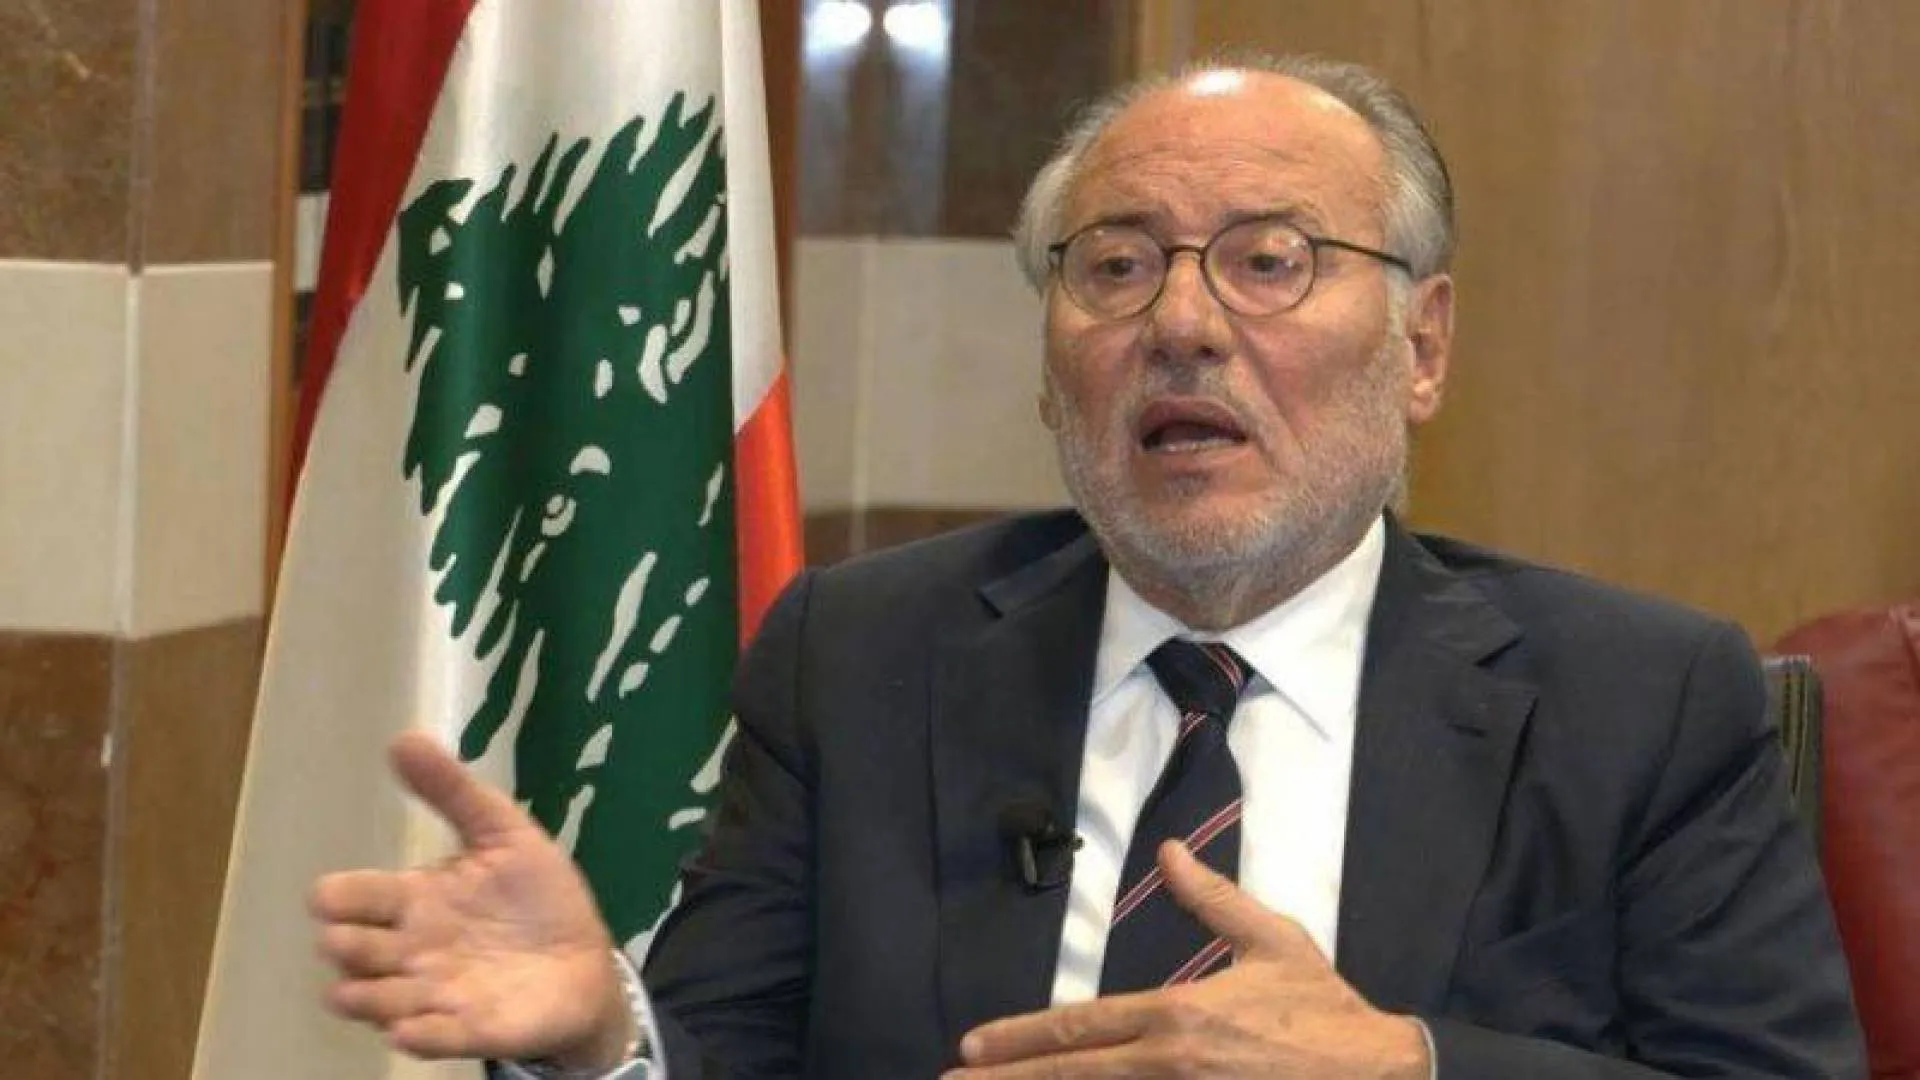 وزير التربية بلبنان حول تعليم الأطفال السوريين: "لن نقترض لتعليم غير اللبنانيين"